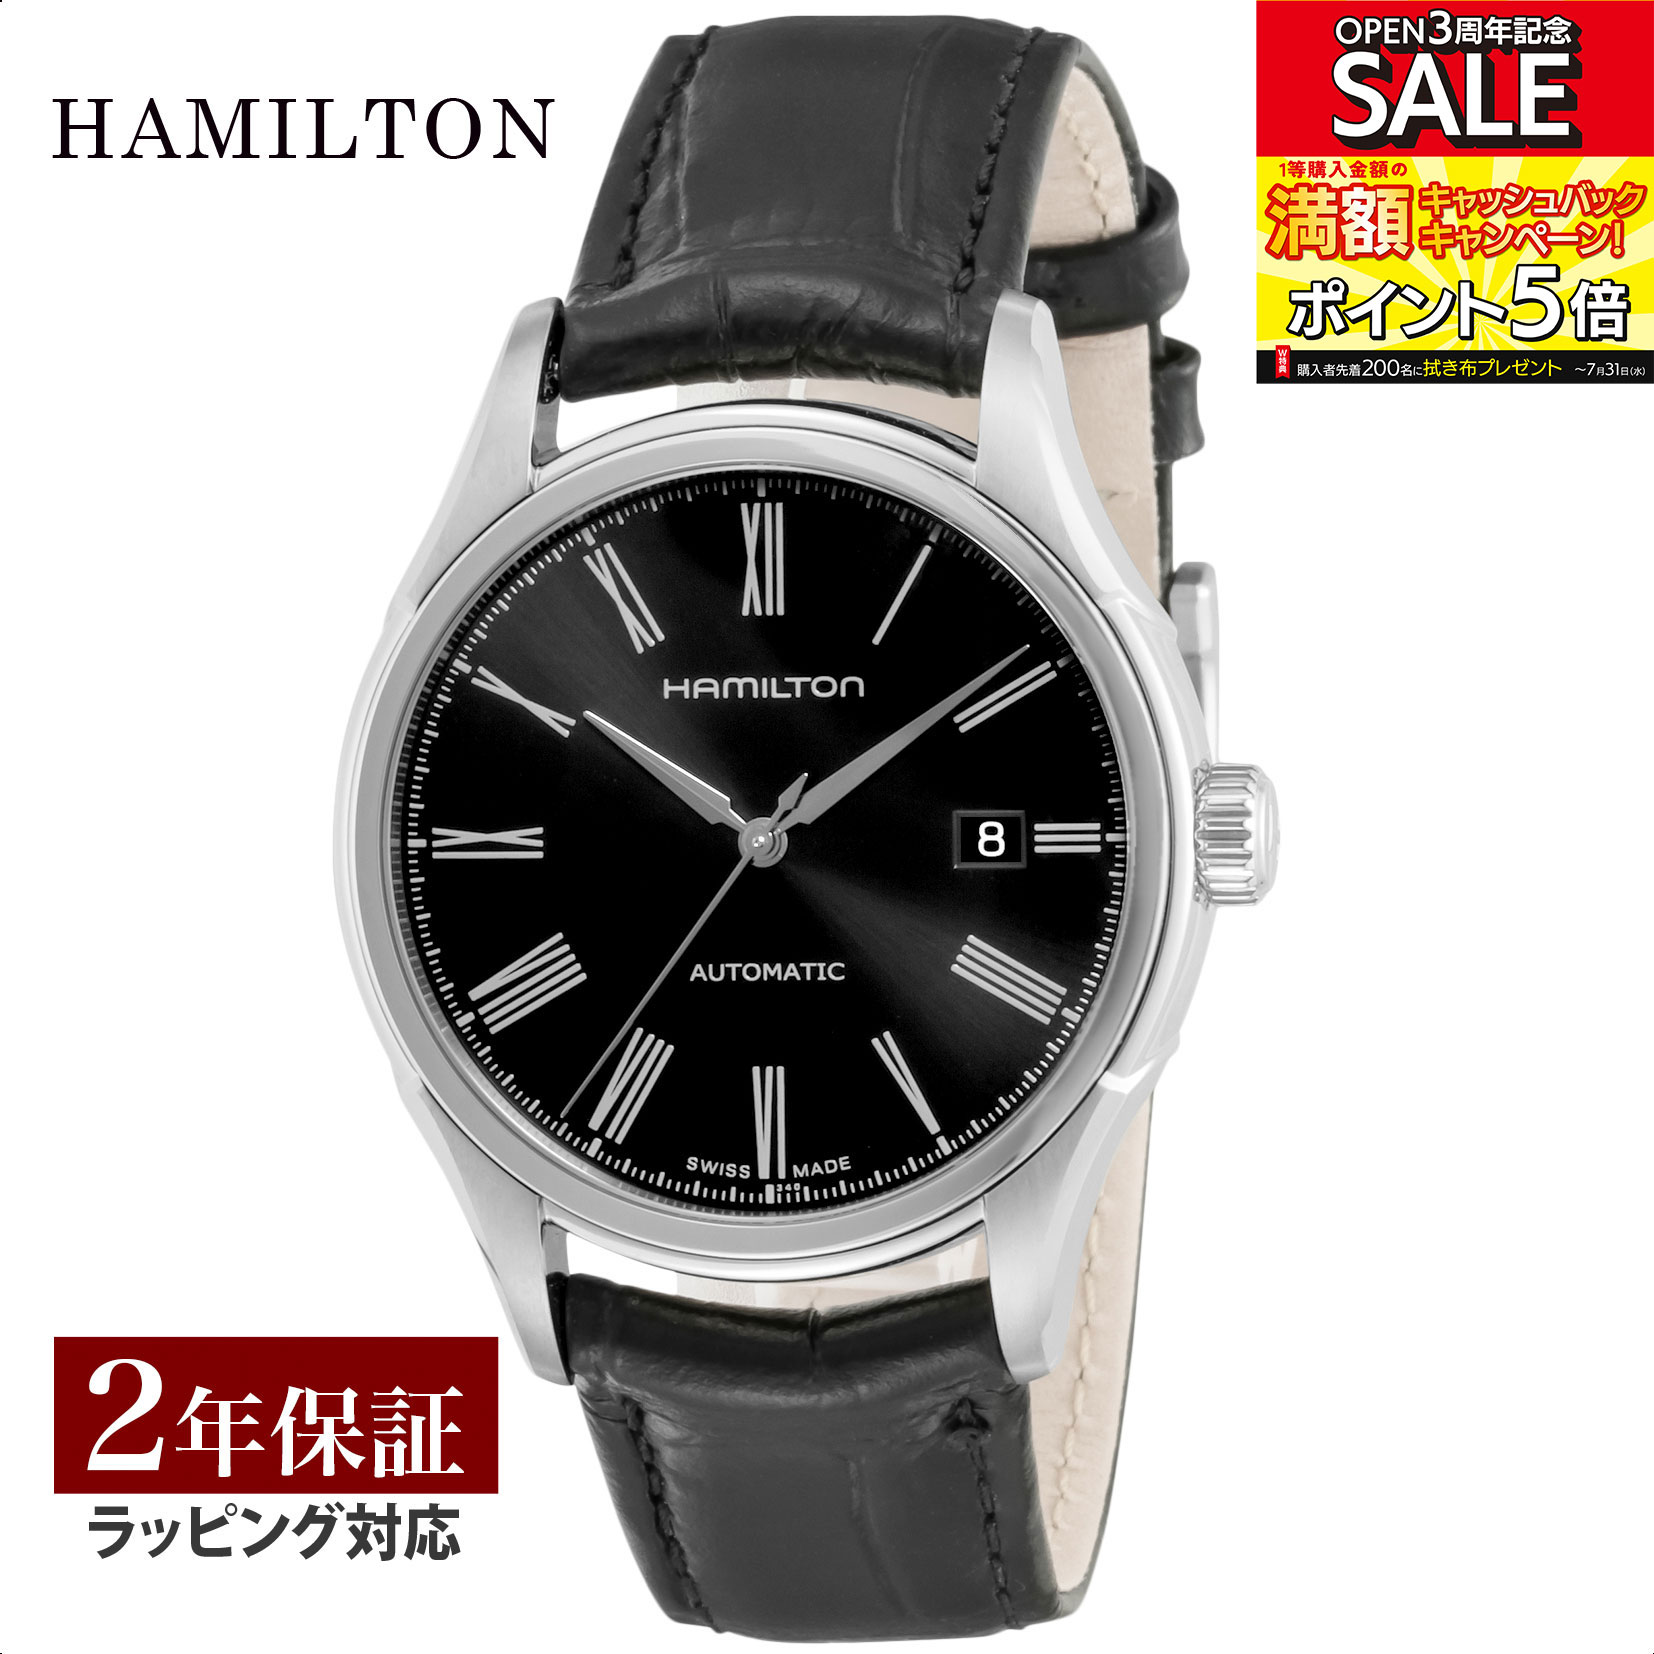 ハミルトン HAMILTON メンズ 時計 アメリカン クラシック バリアント American Classic Valiant 自動巻 ブラック H39515734 腕時計 高級腕時計 ブランド